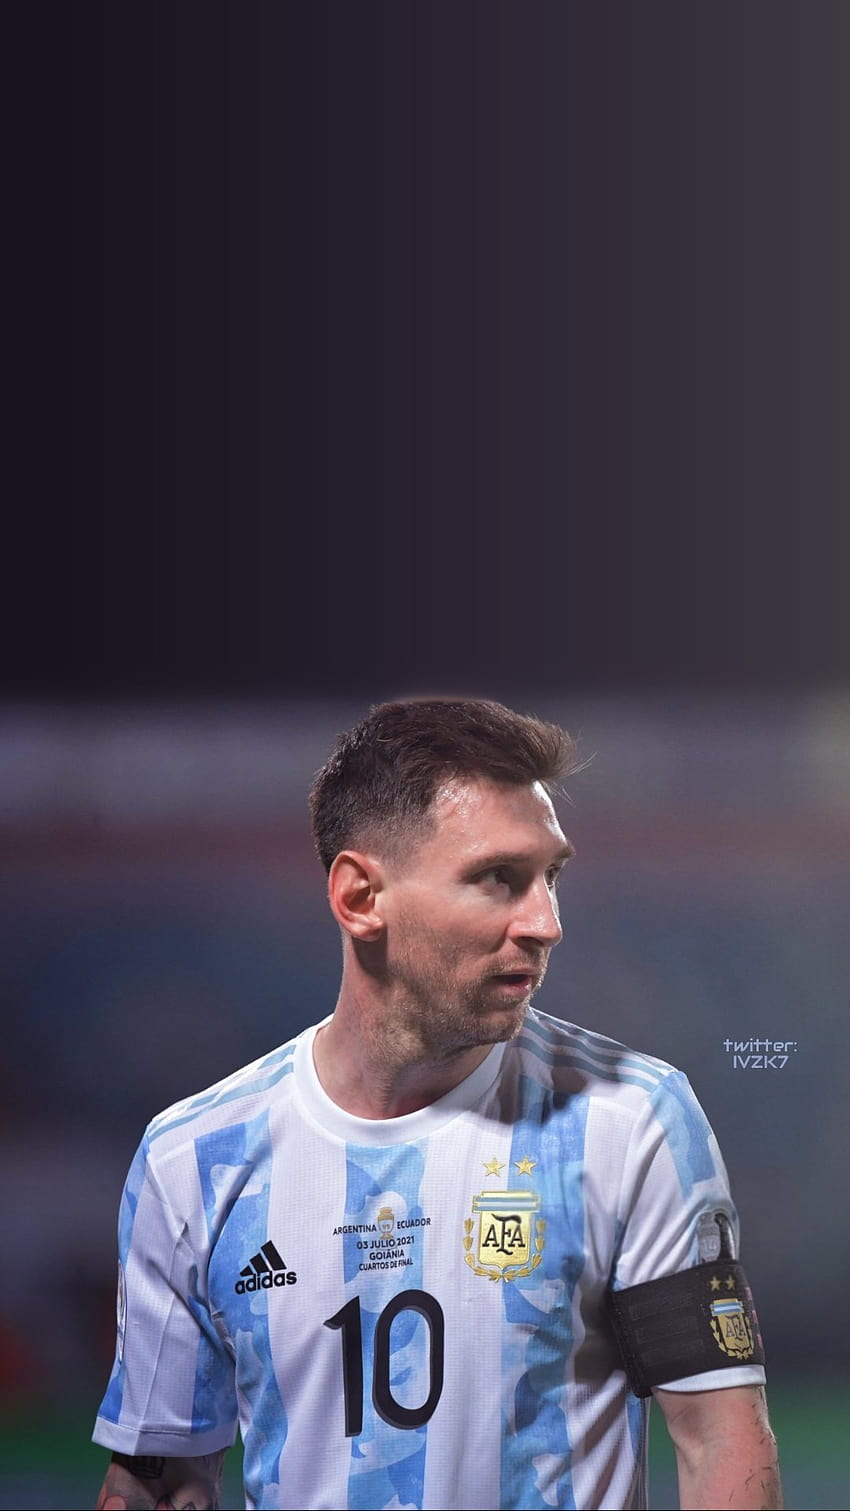 Hình nền Messi Argentina làm nổi bật vẻ đẹp của ngôi sao bóng đá này. Với những bức ảnh đẹp, độc đáo và sắc nét nhất, hình nền Messi Argentina sẽ giúp bạn tận hưởng niềm đam mê với bóng đá và người hùng của mình.